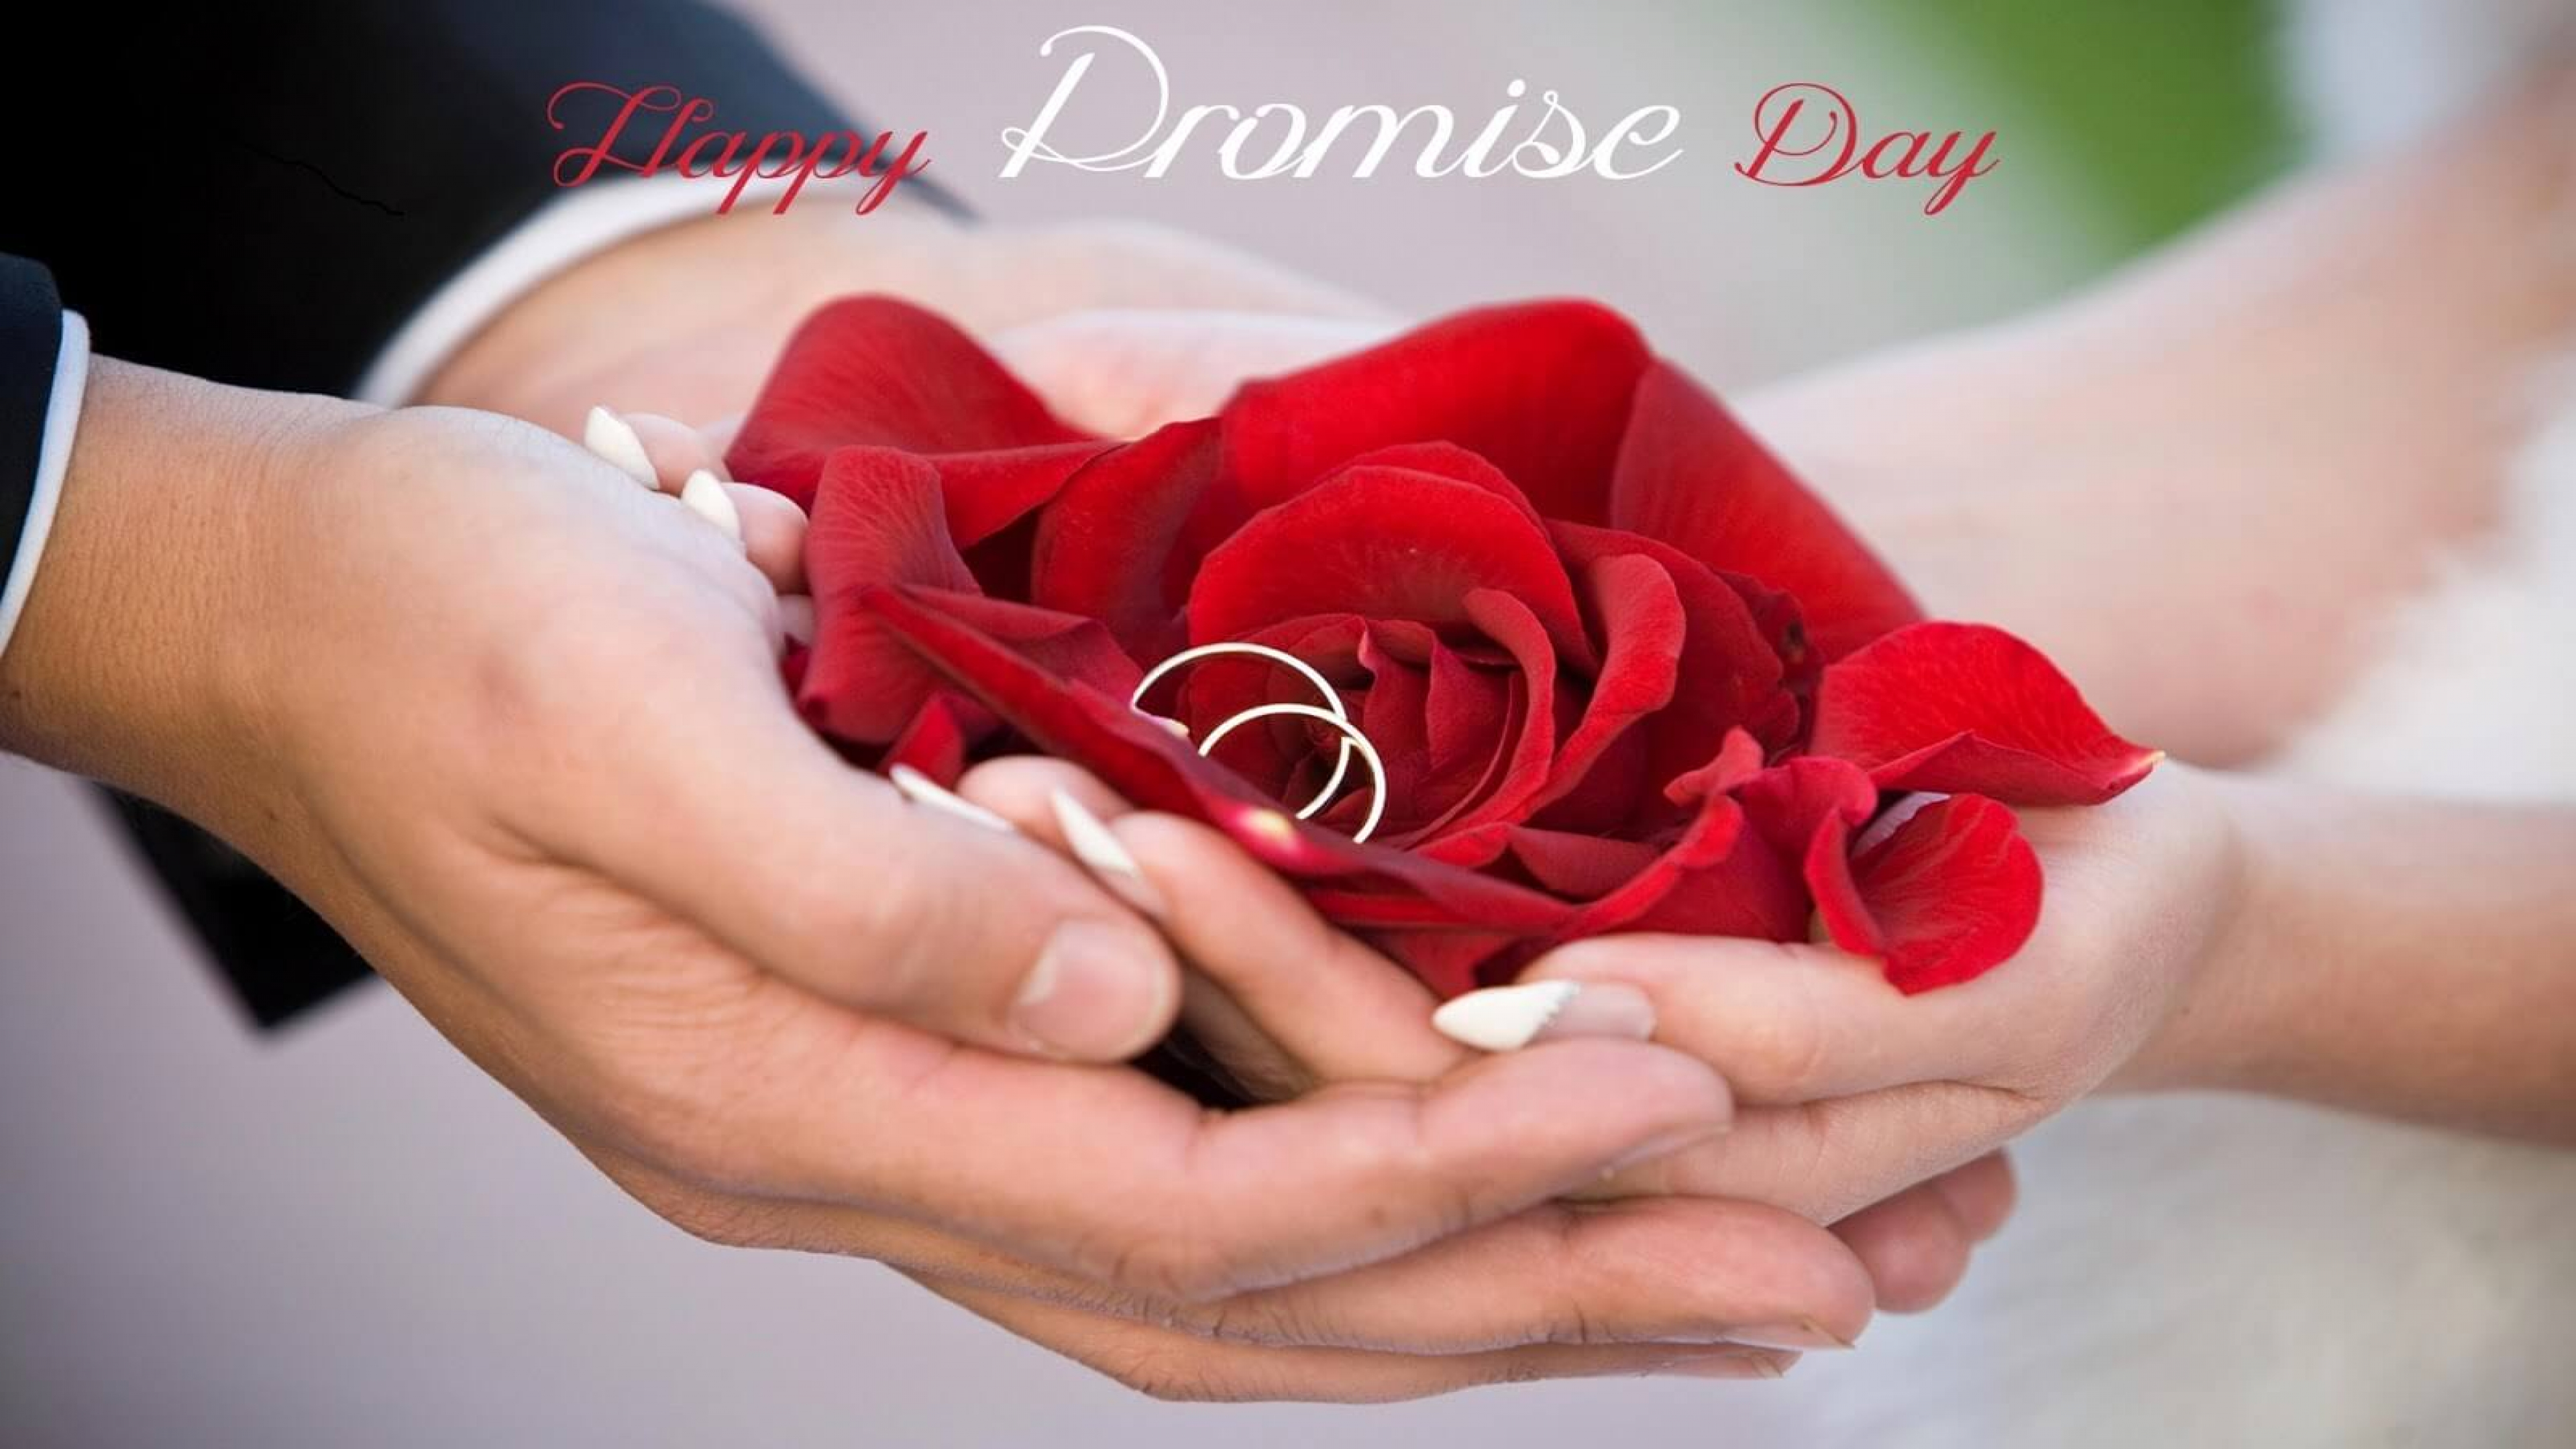 fond d'écran de jour de promesse,rouge,clou,main,cérémonie de mariage,fleur